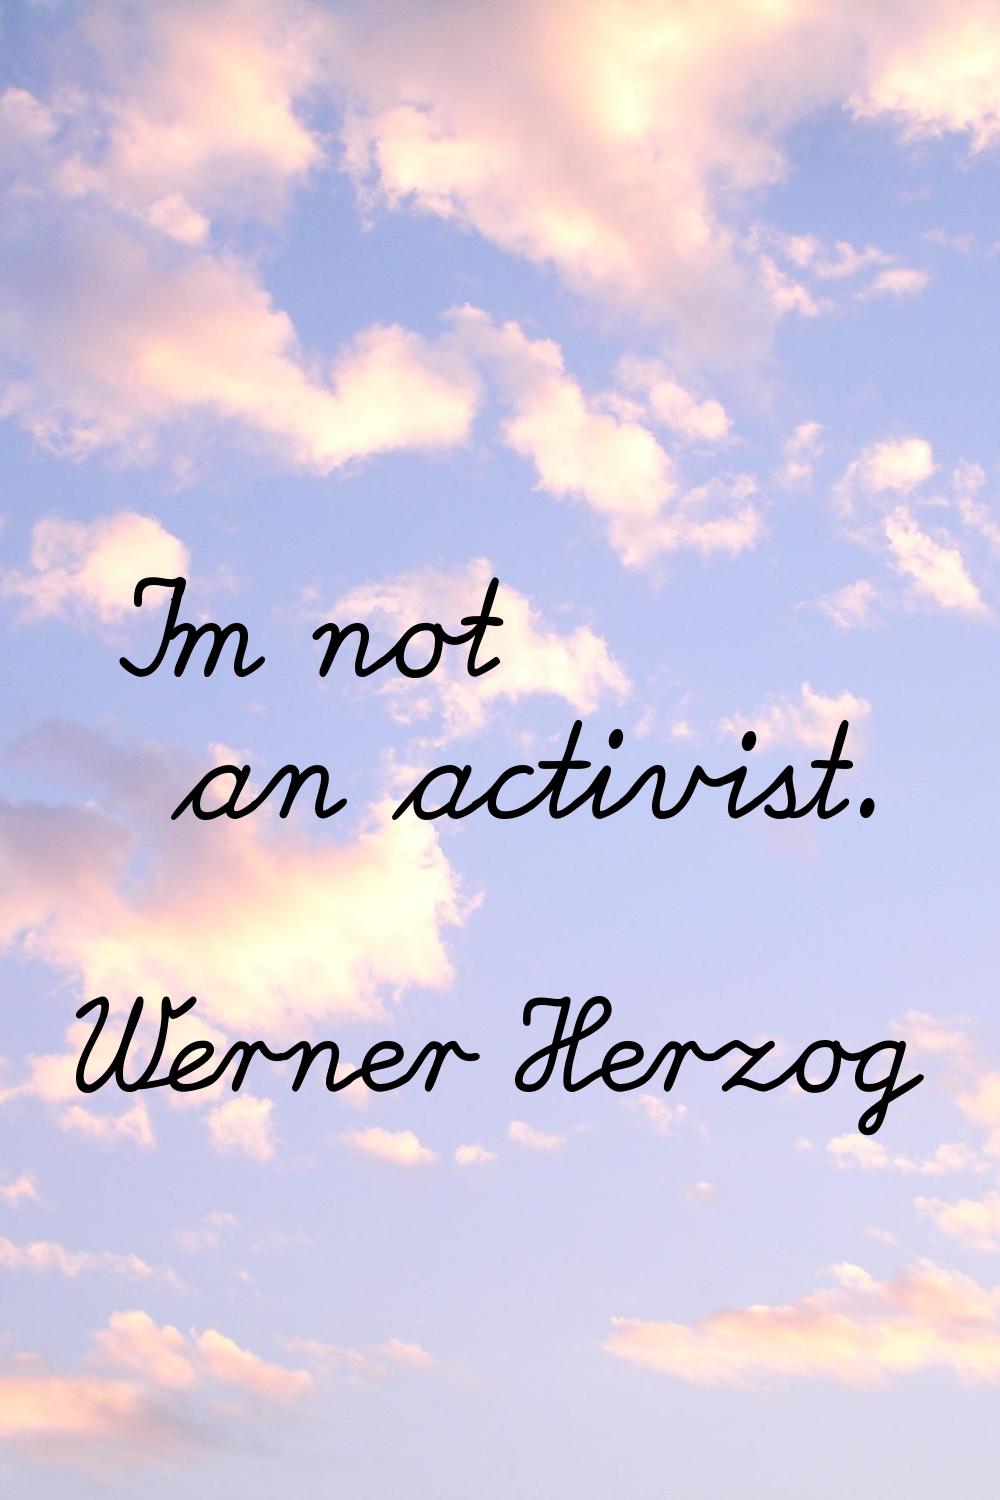 I'm not an activist.